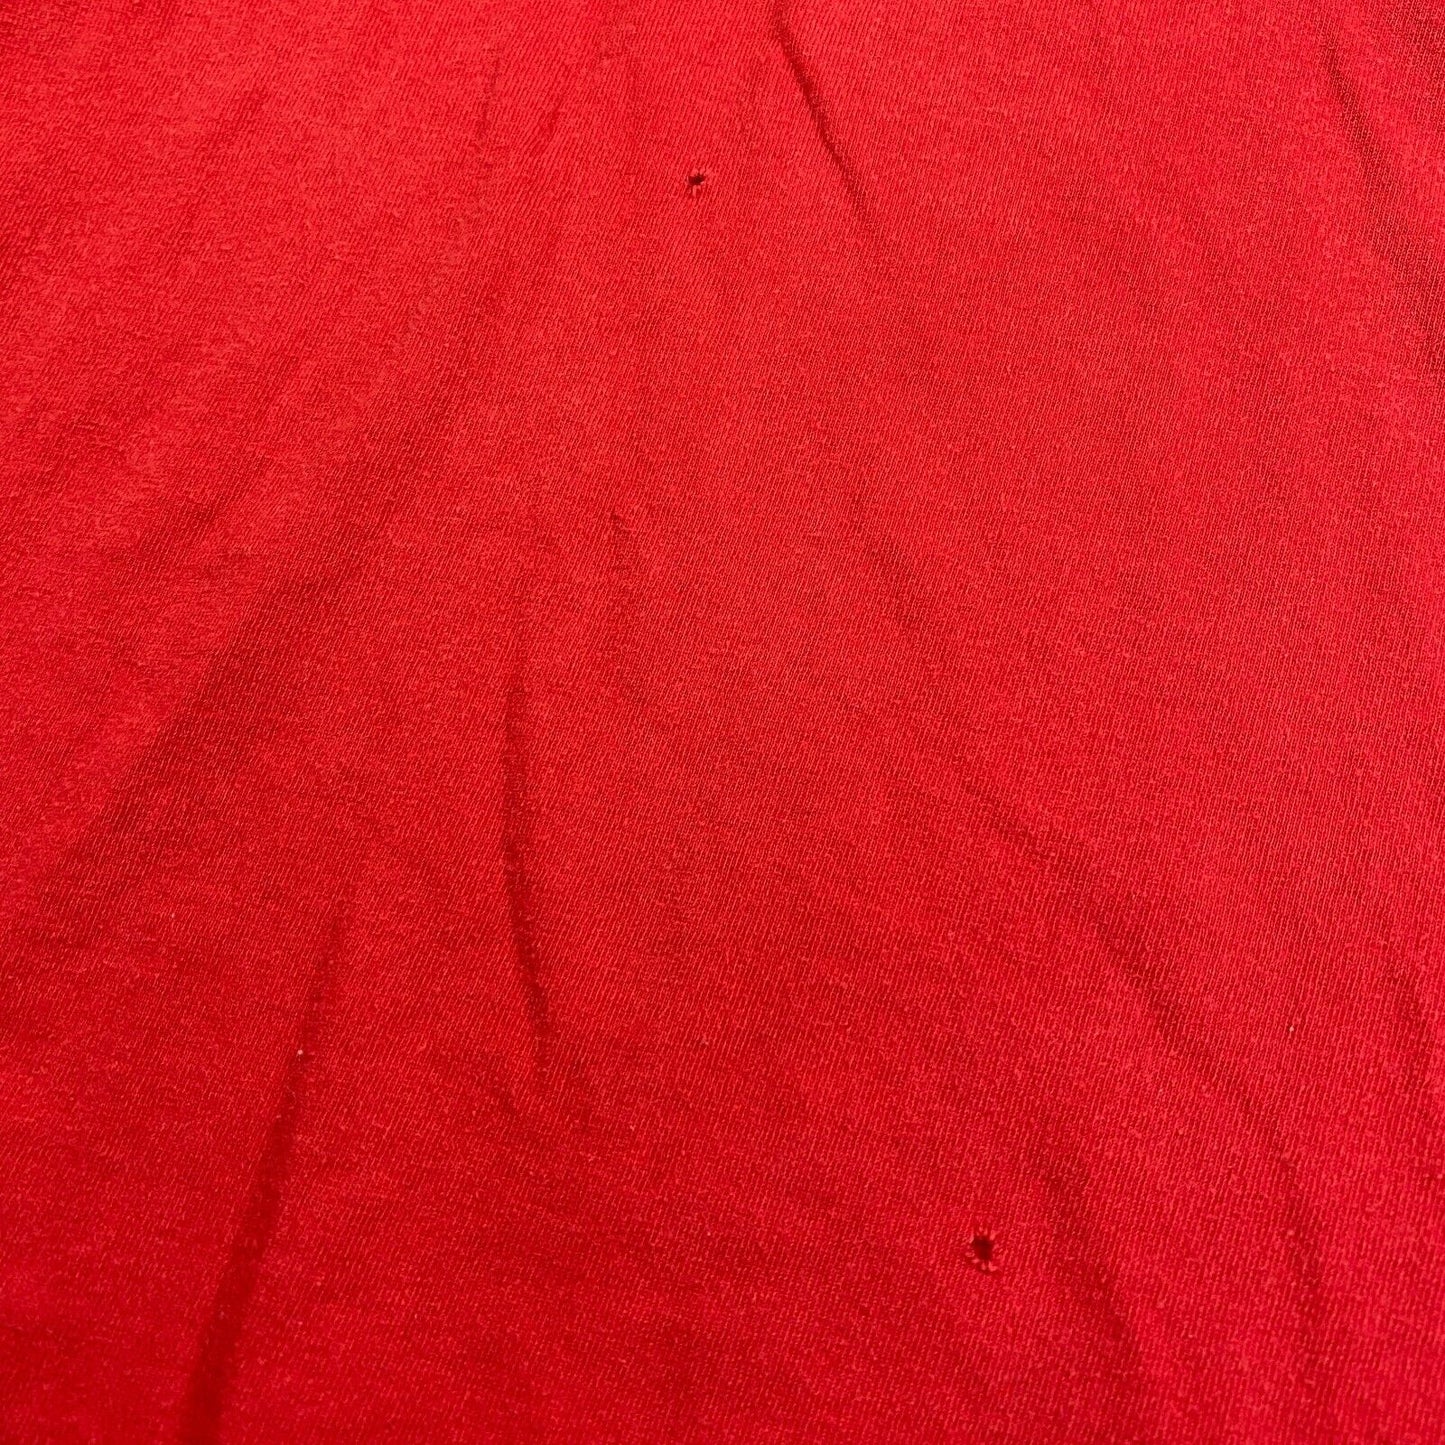 VINTAGE Tommy Hilfiger Sm Flag Red T-Shirt sz XL Adult